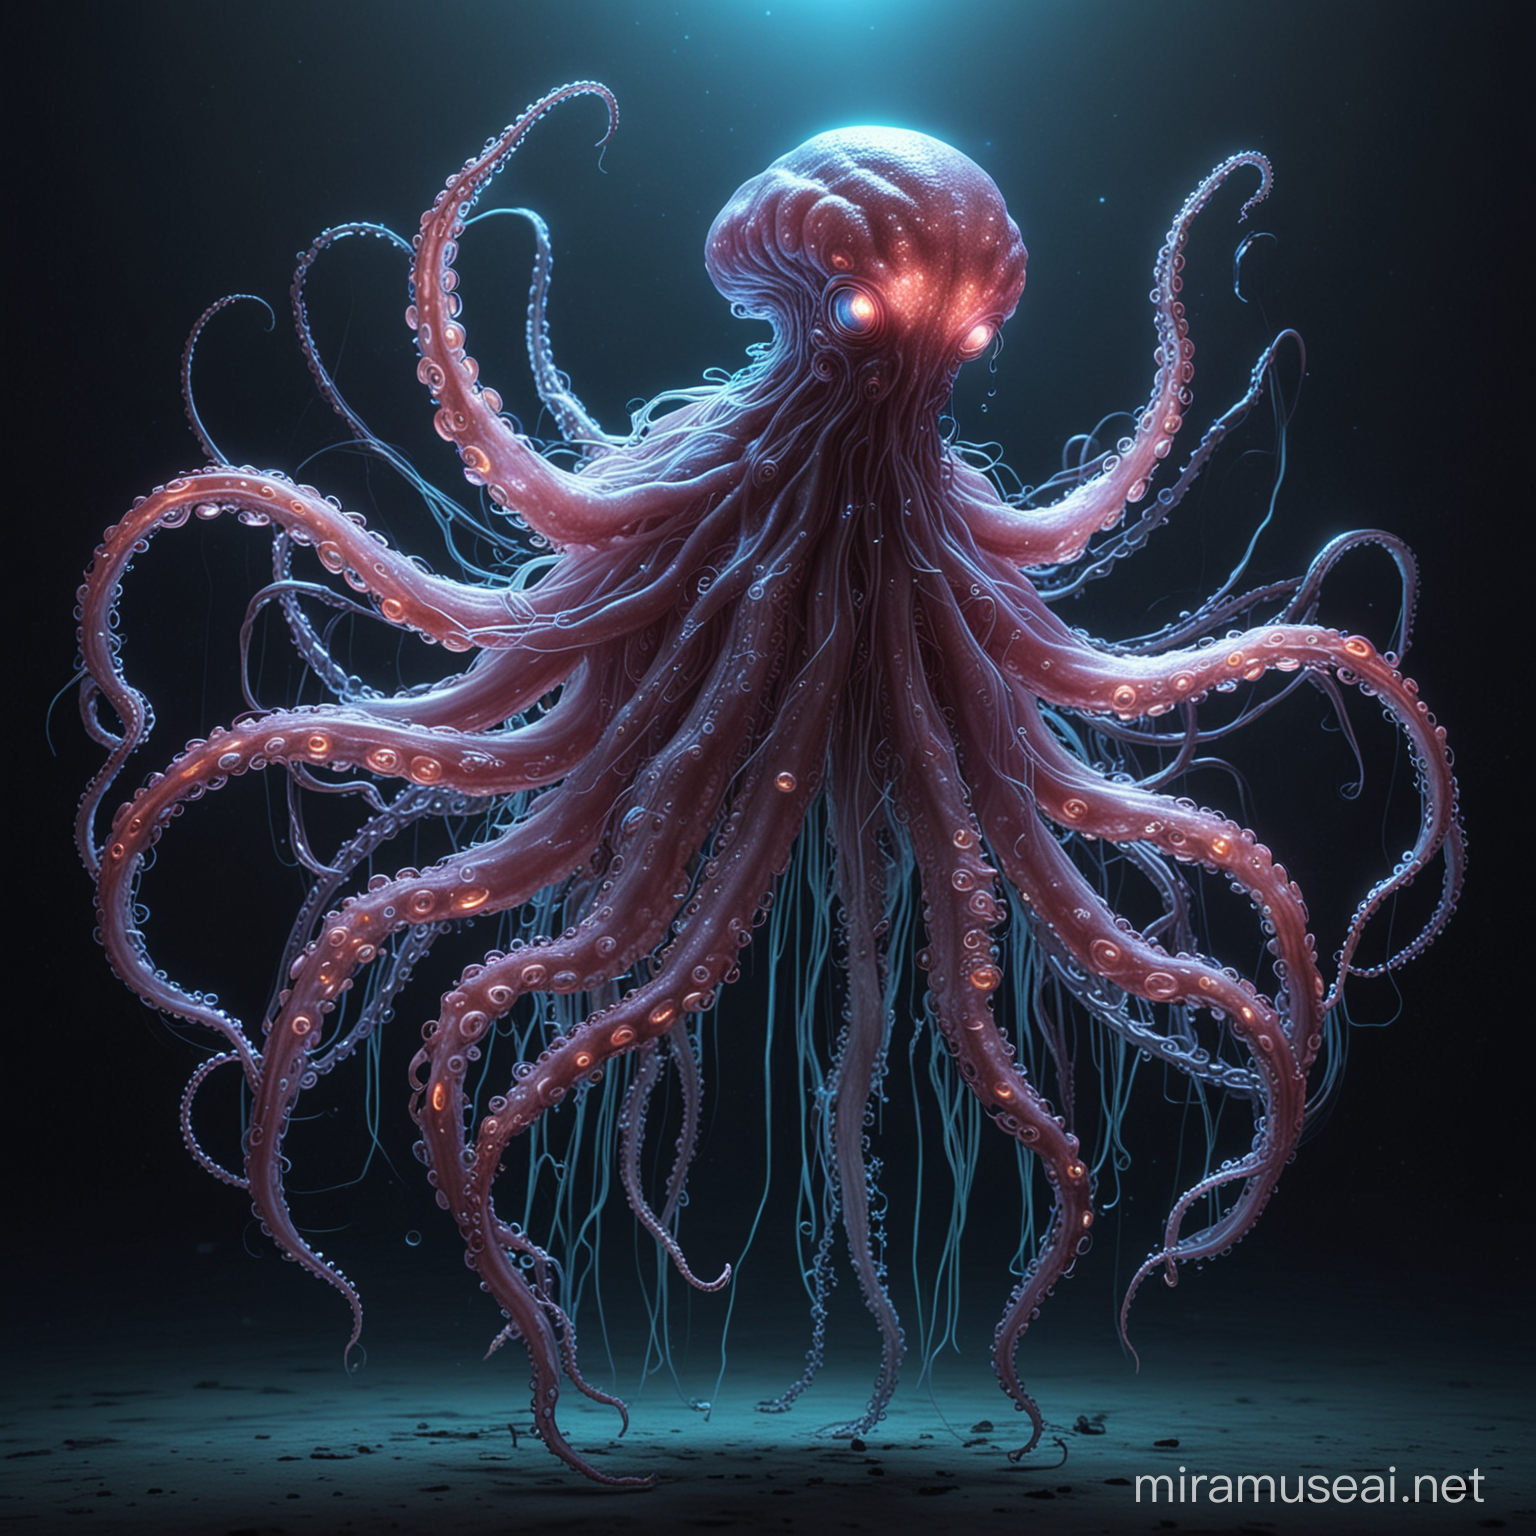 NeonLit OctopusJellyfish Alien Extraterrestrial Creature with Vivid Illumination